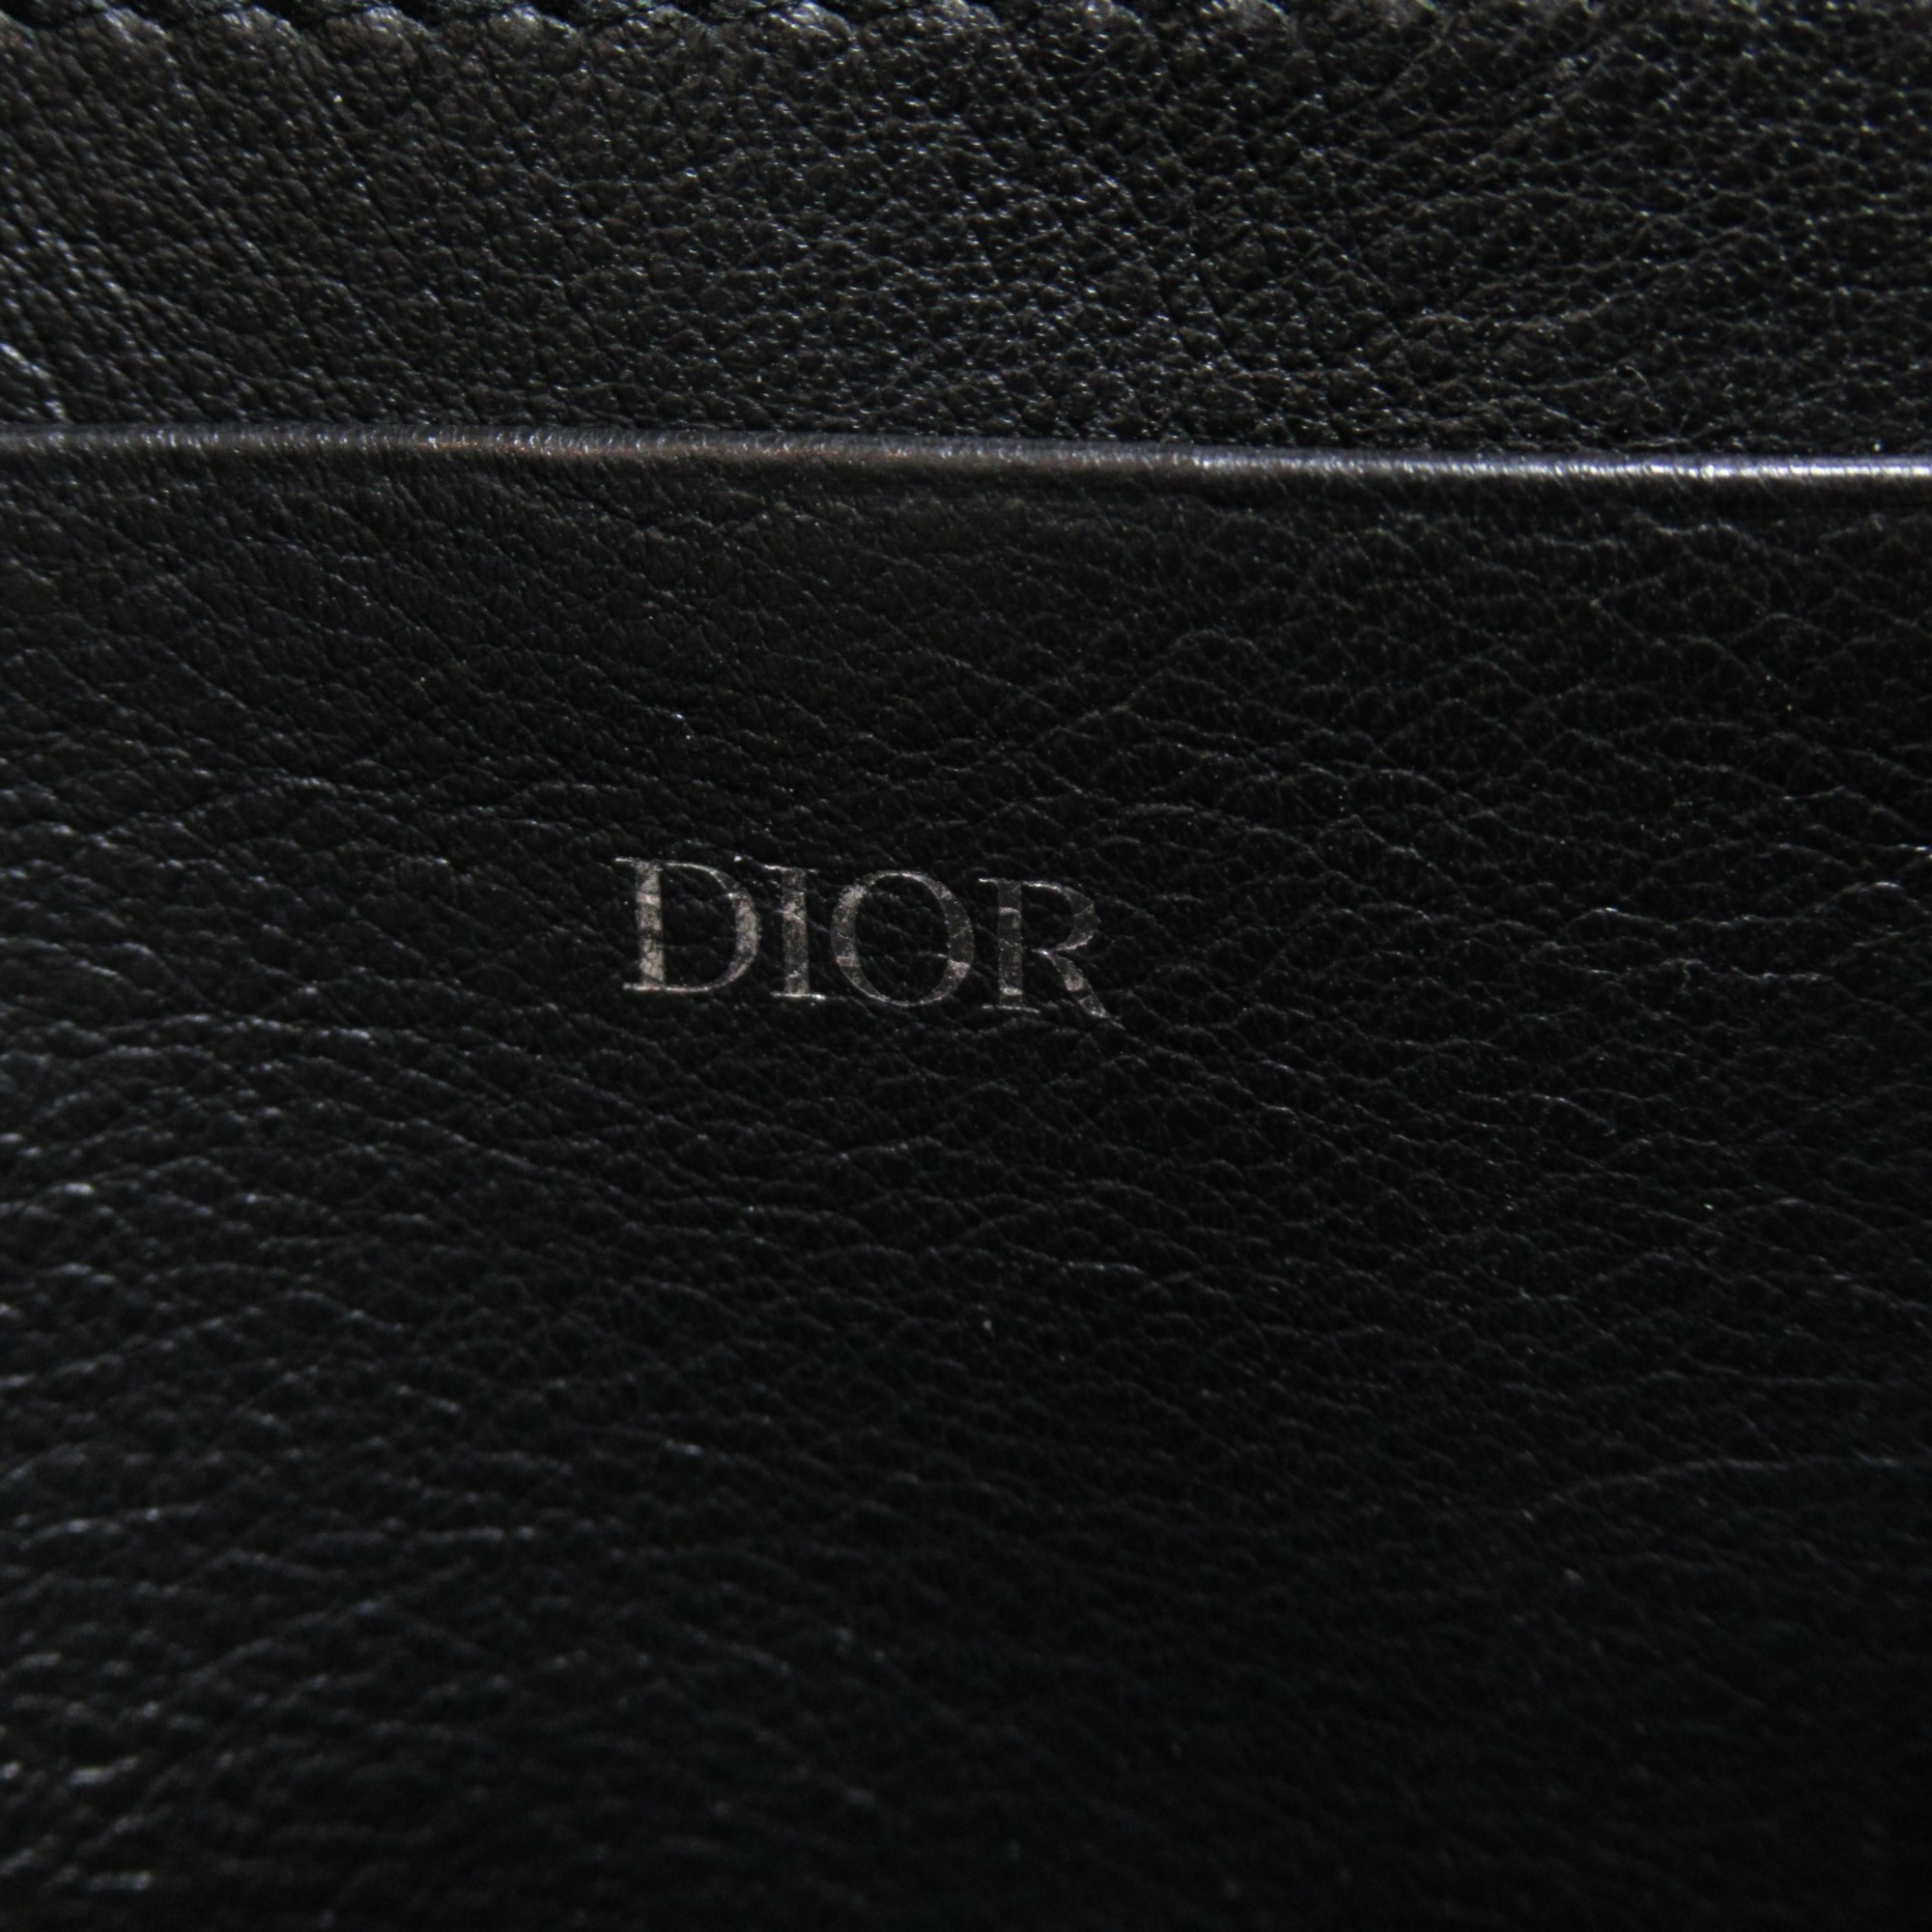 Dior Shoulder Bag Black leather